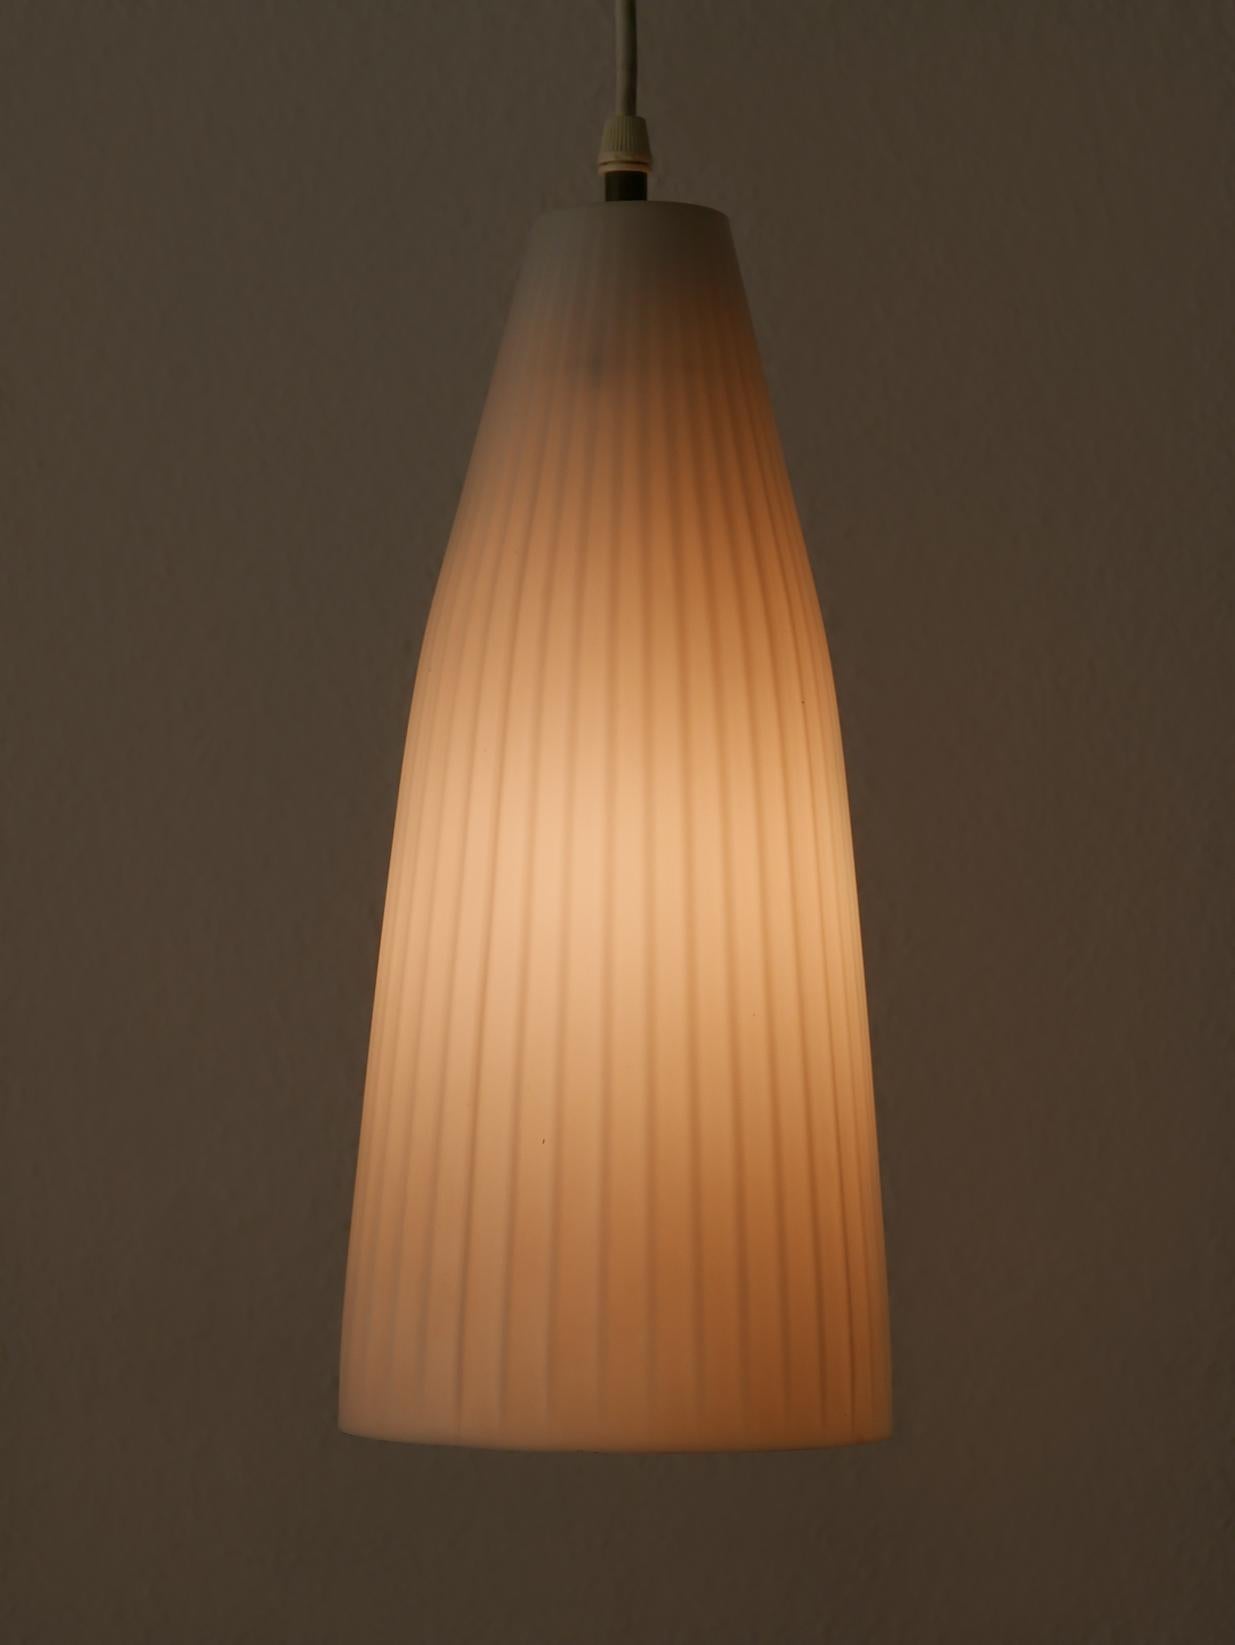 Elegante lampe suspendue ou lampe à suspendre de style Mid-Century Modern. Conçu par Aloys Ferdinand Gangkofner et fabriqué par Peill & Putzler, Dueren, Allemagne, années 1950.

Réalisée en verre opalin, chaque lampe nécessite une ampoule à vis E27